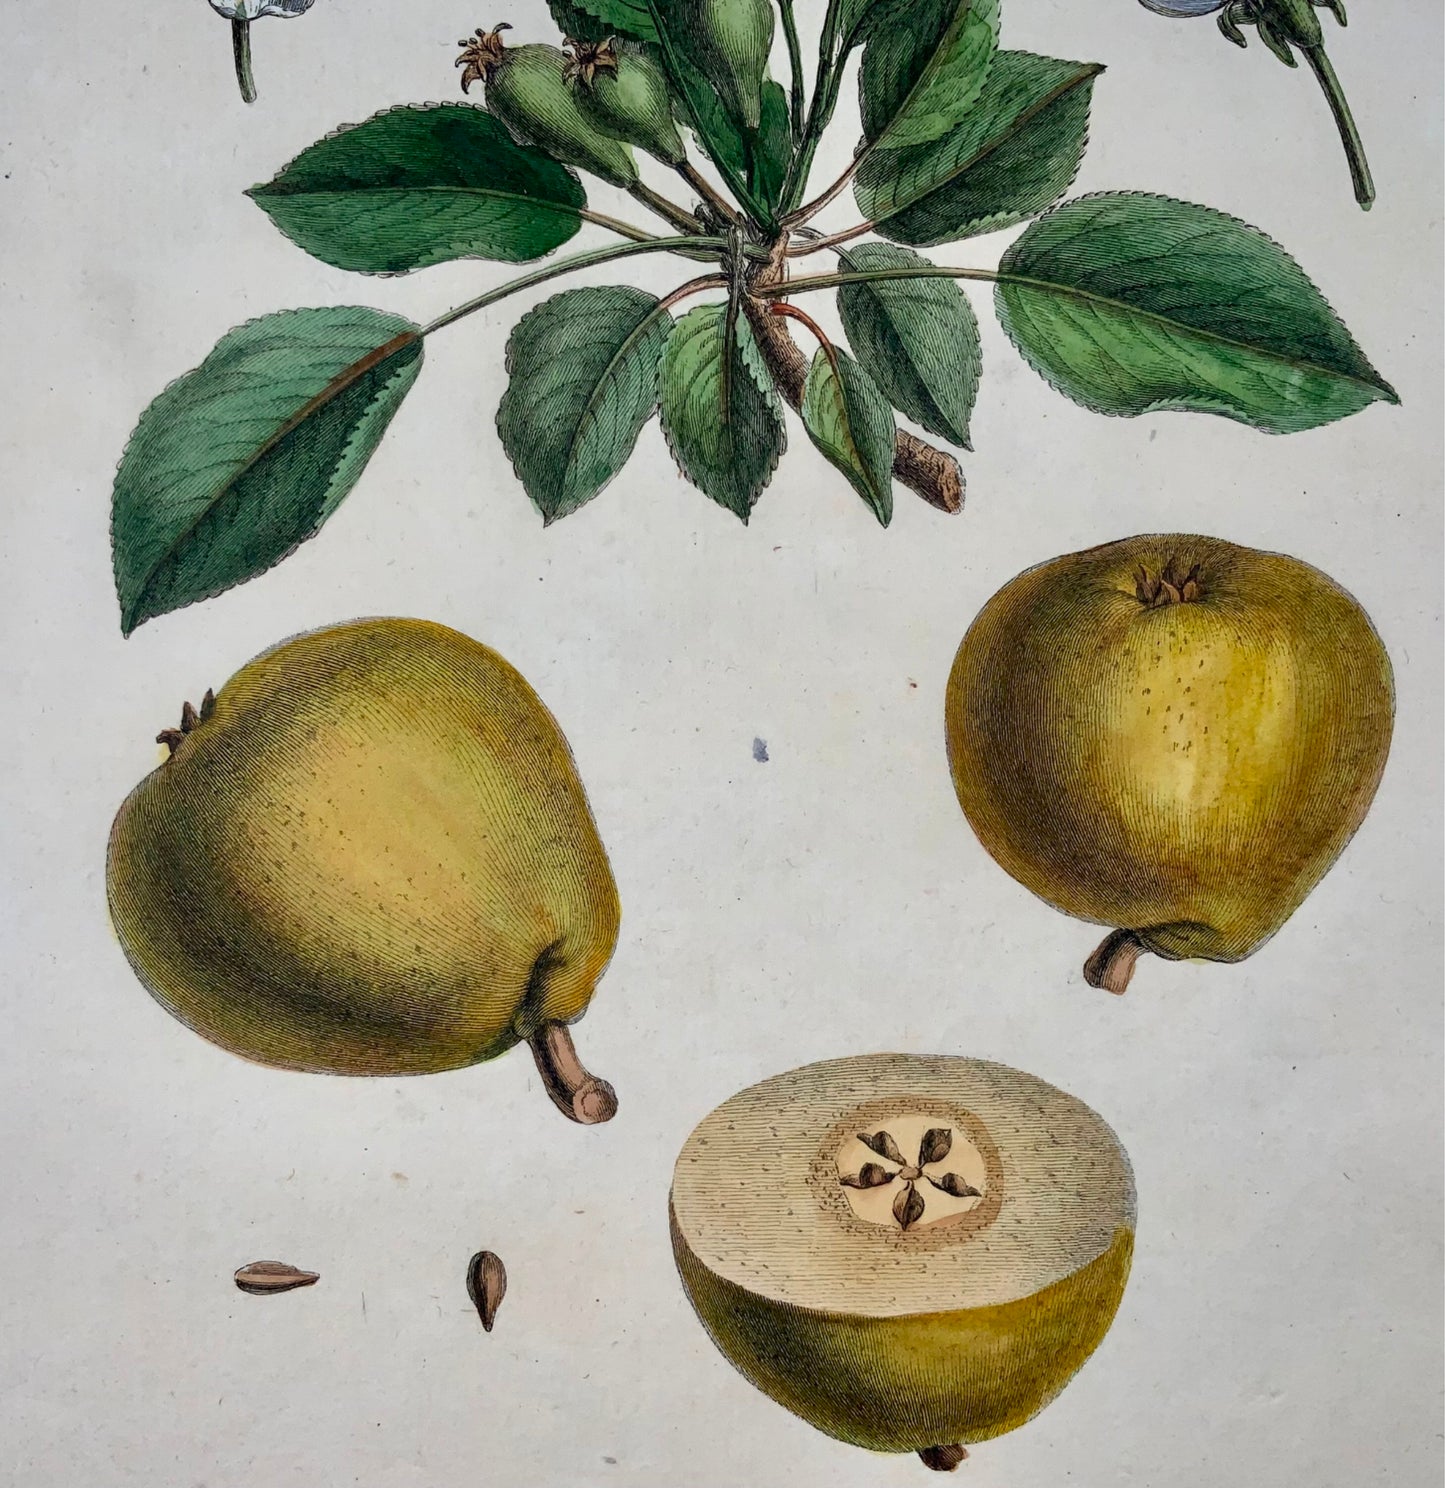 1768 Poire, Clair-Dame, fruit, Duhamel du Monceau, grand in-4, coloris main, 